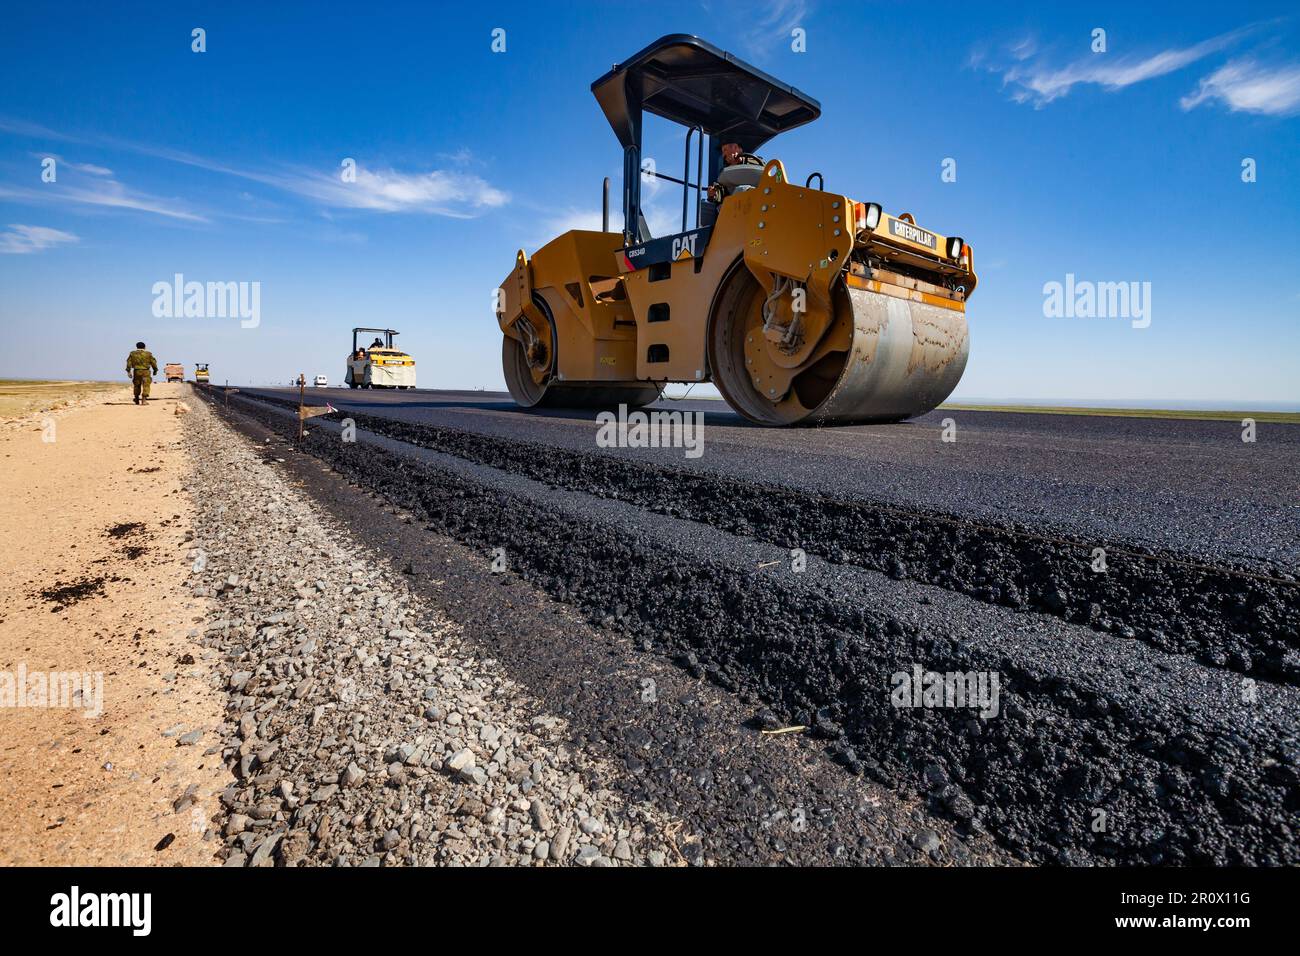 Province de Kyzylorda, Kazakhstan, 29 avril 2012 : construction de la route Europe occidentale-Chine occidentale. Le compacteur tandem vibrant Caterpillar aplatit les couches d'asphalte Banque D'Images